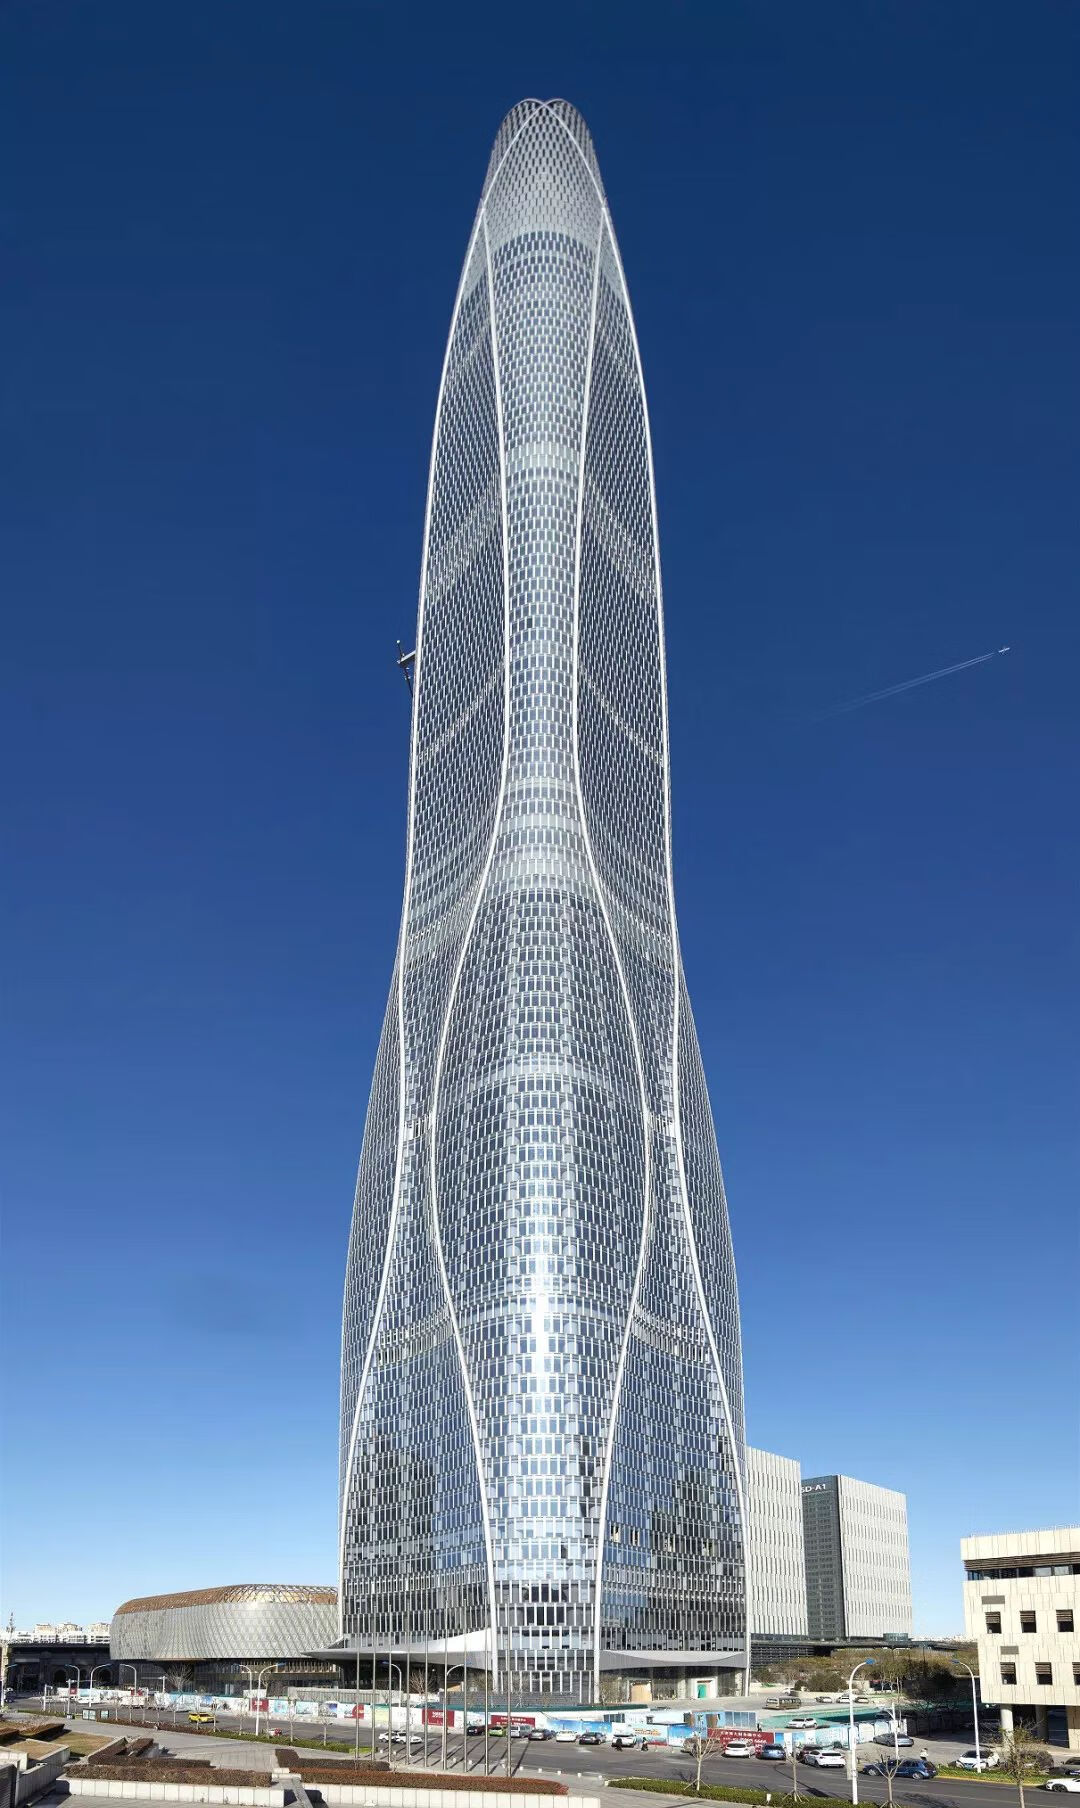 上海未来第一高楼图片